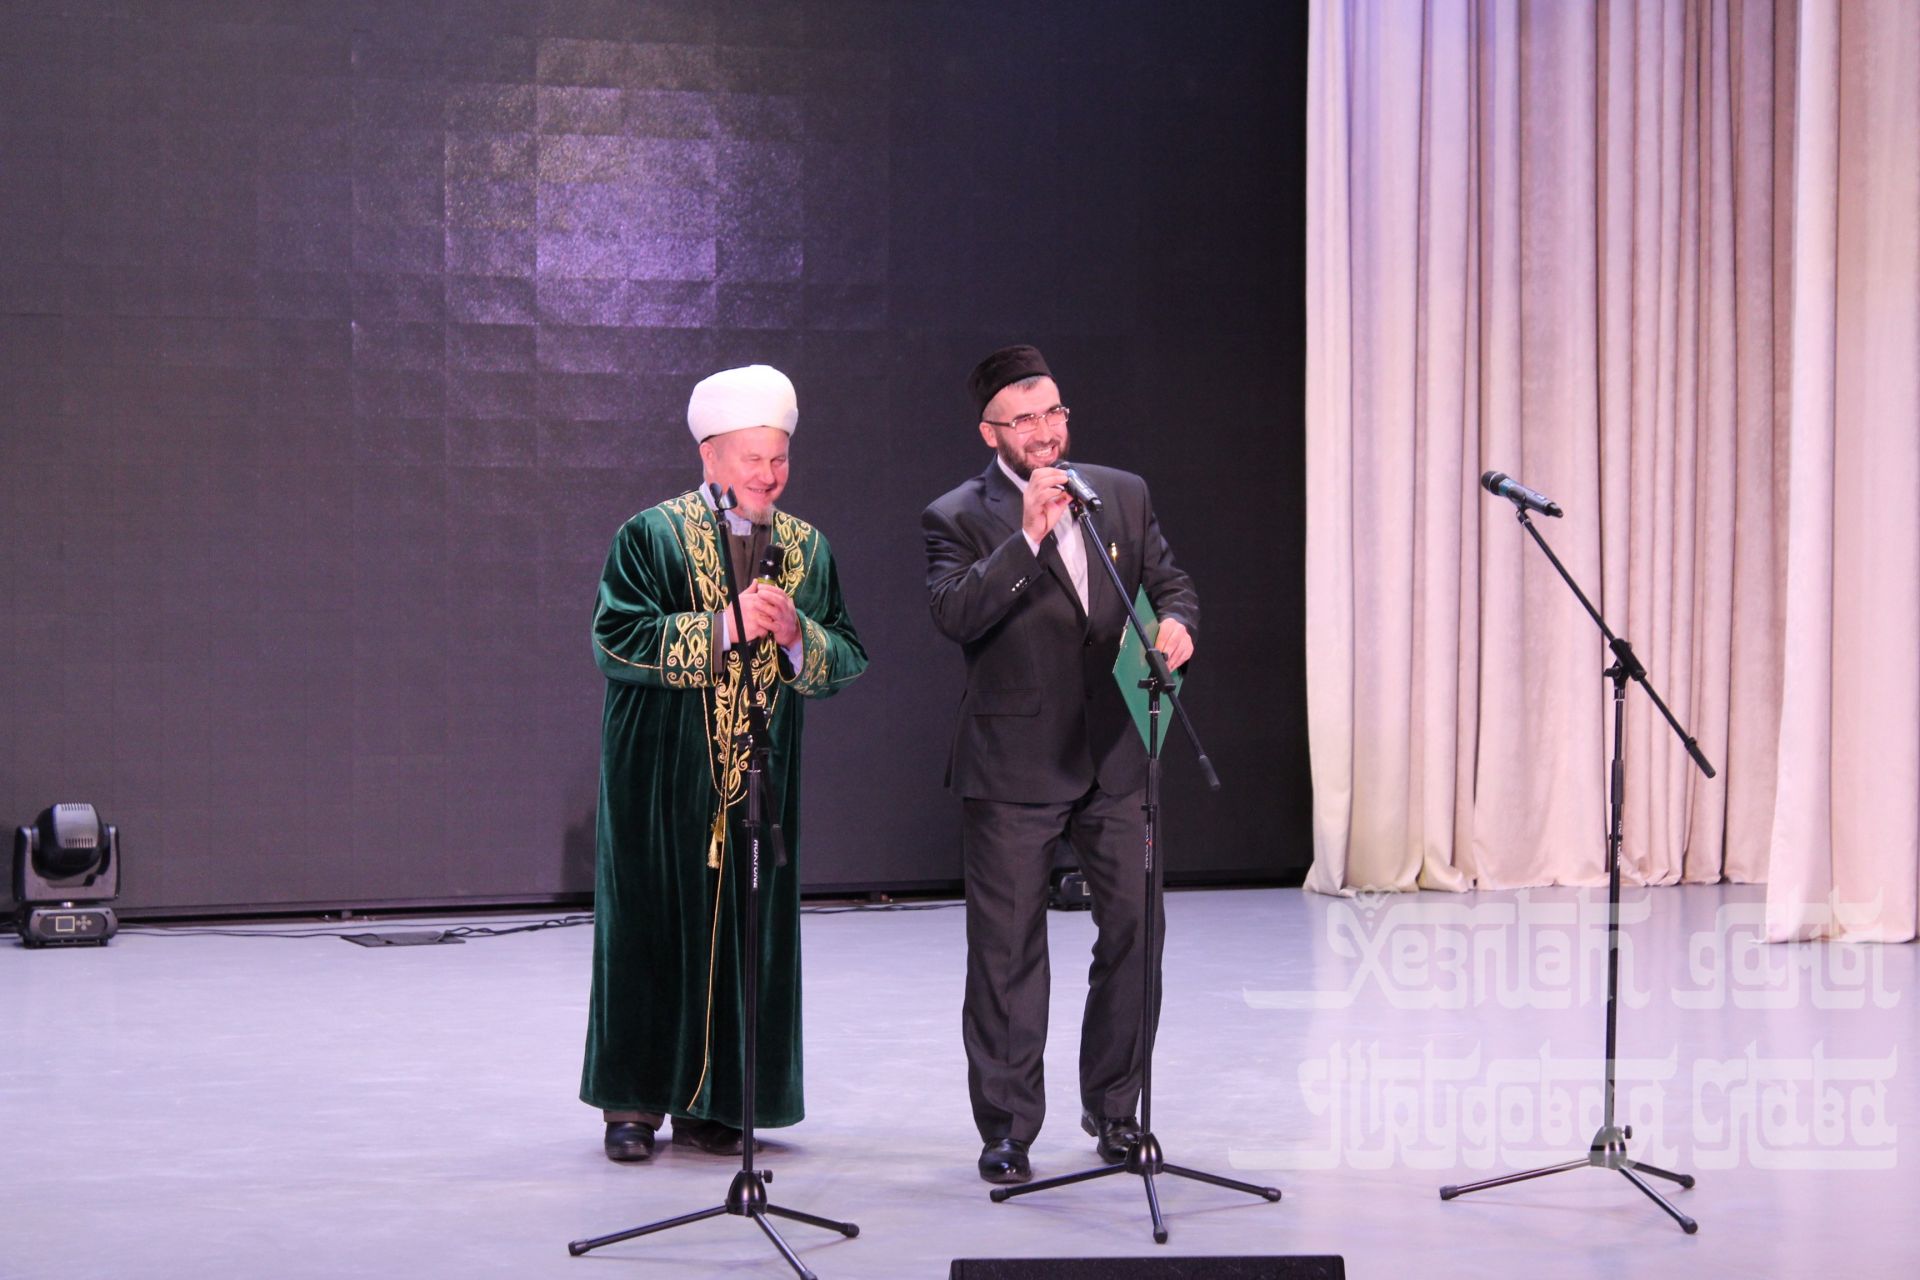 Фото: В Кукморе состоялся торжественный вечер, посвященный 20-летию медресе